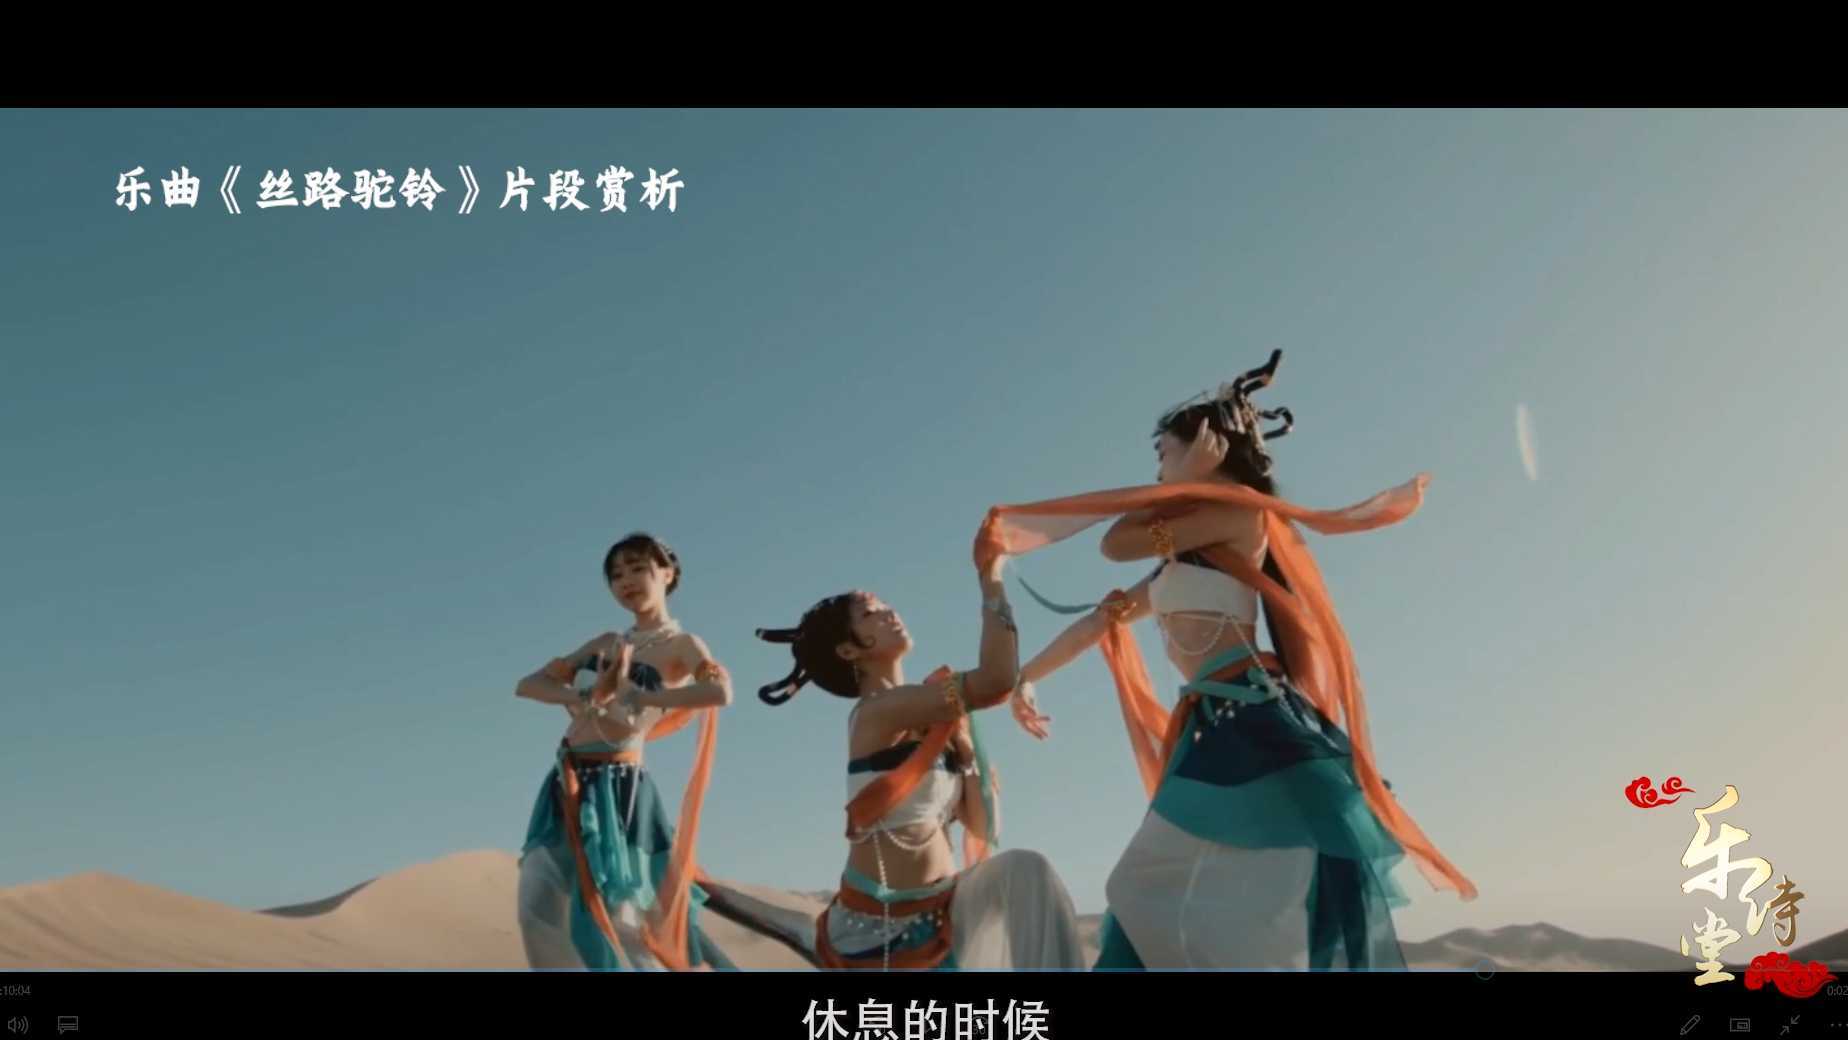 贵州省黔剧院民族管弦乐团栏目片《乐诗堂之琵琶》